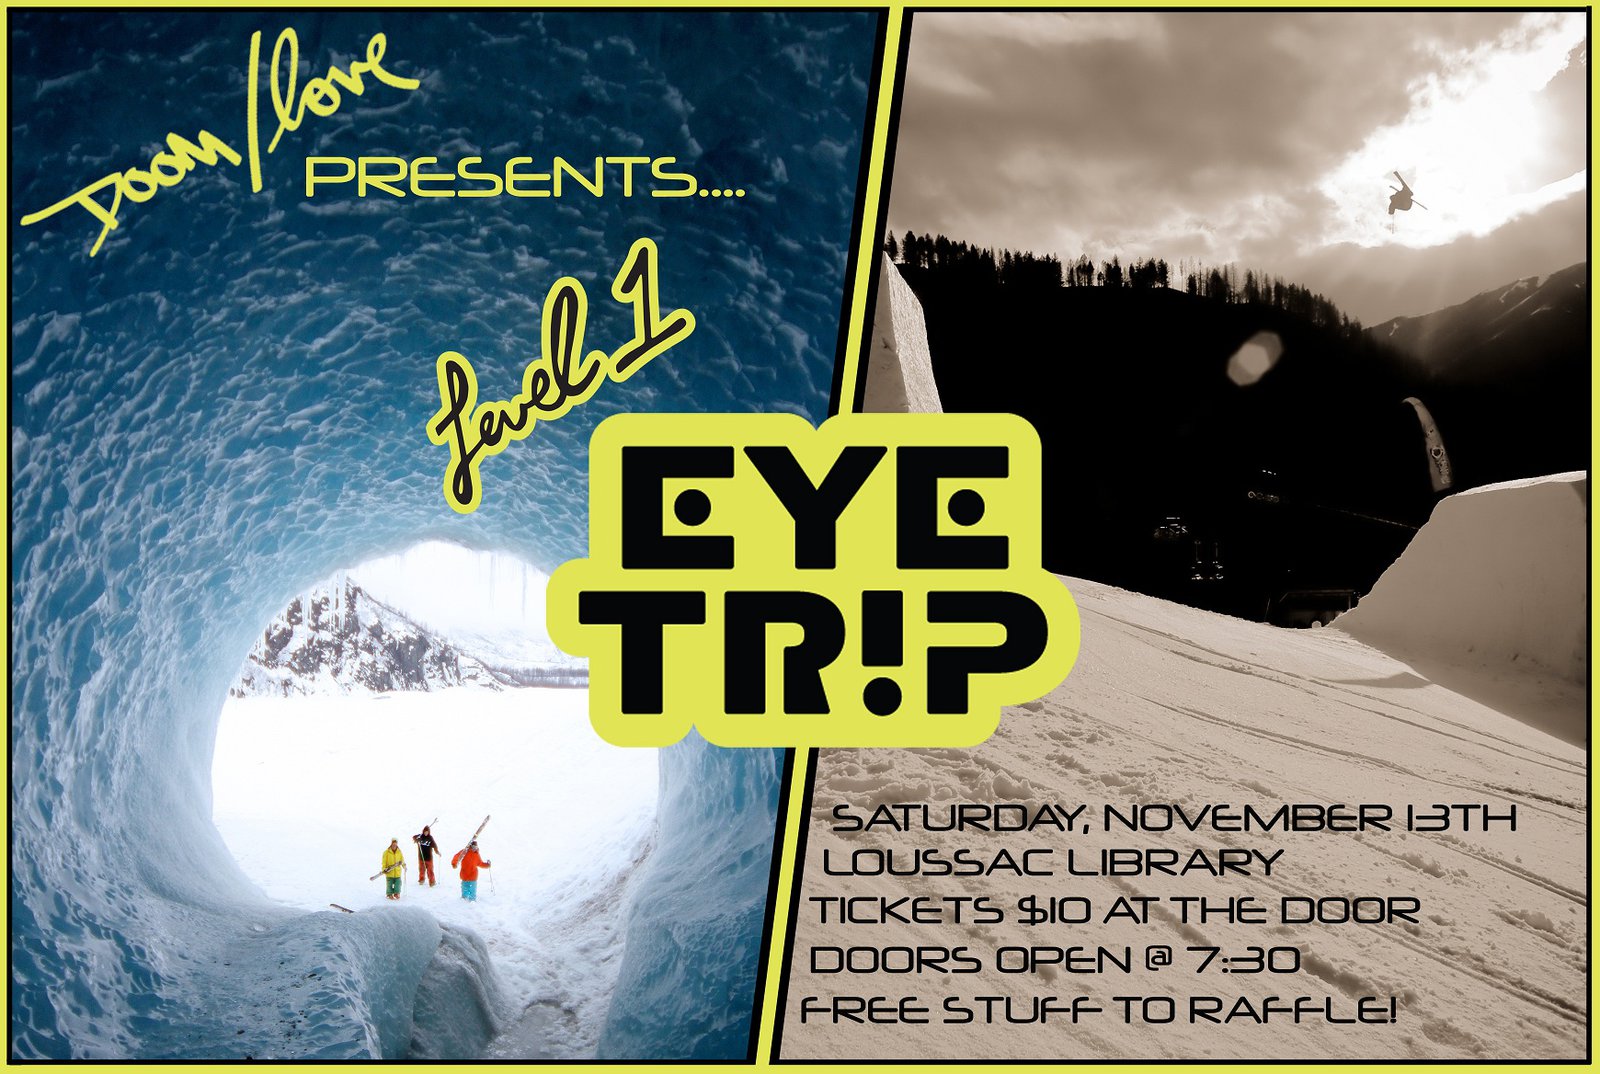 Anchorage eye trip premier!